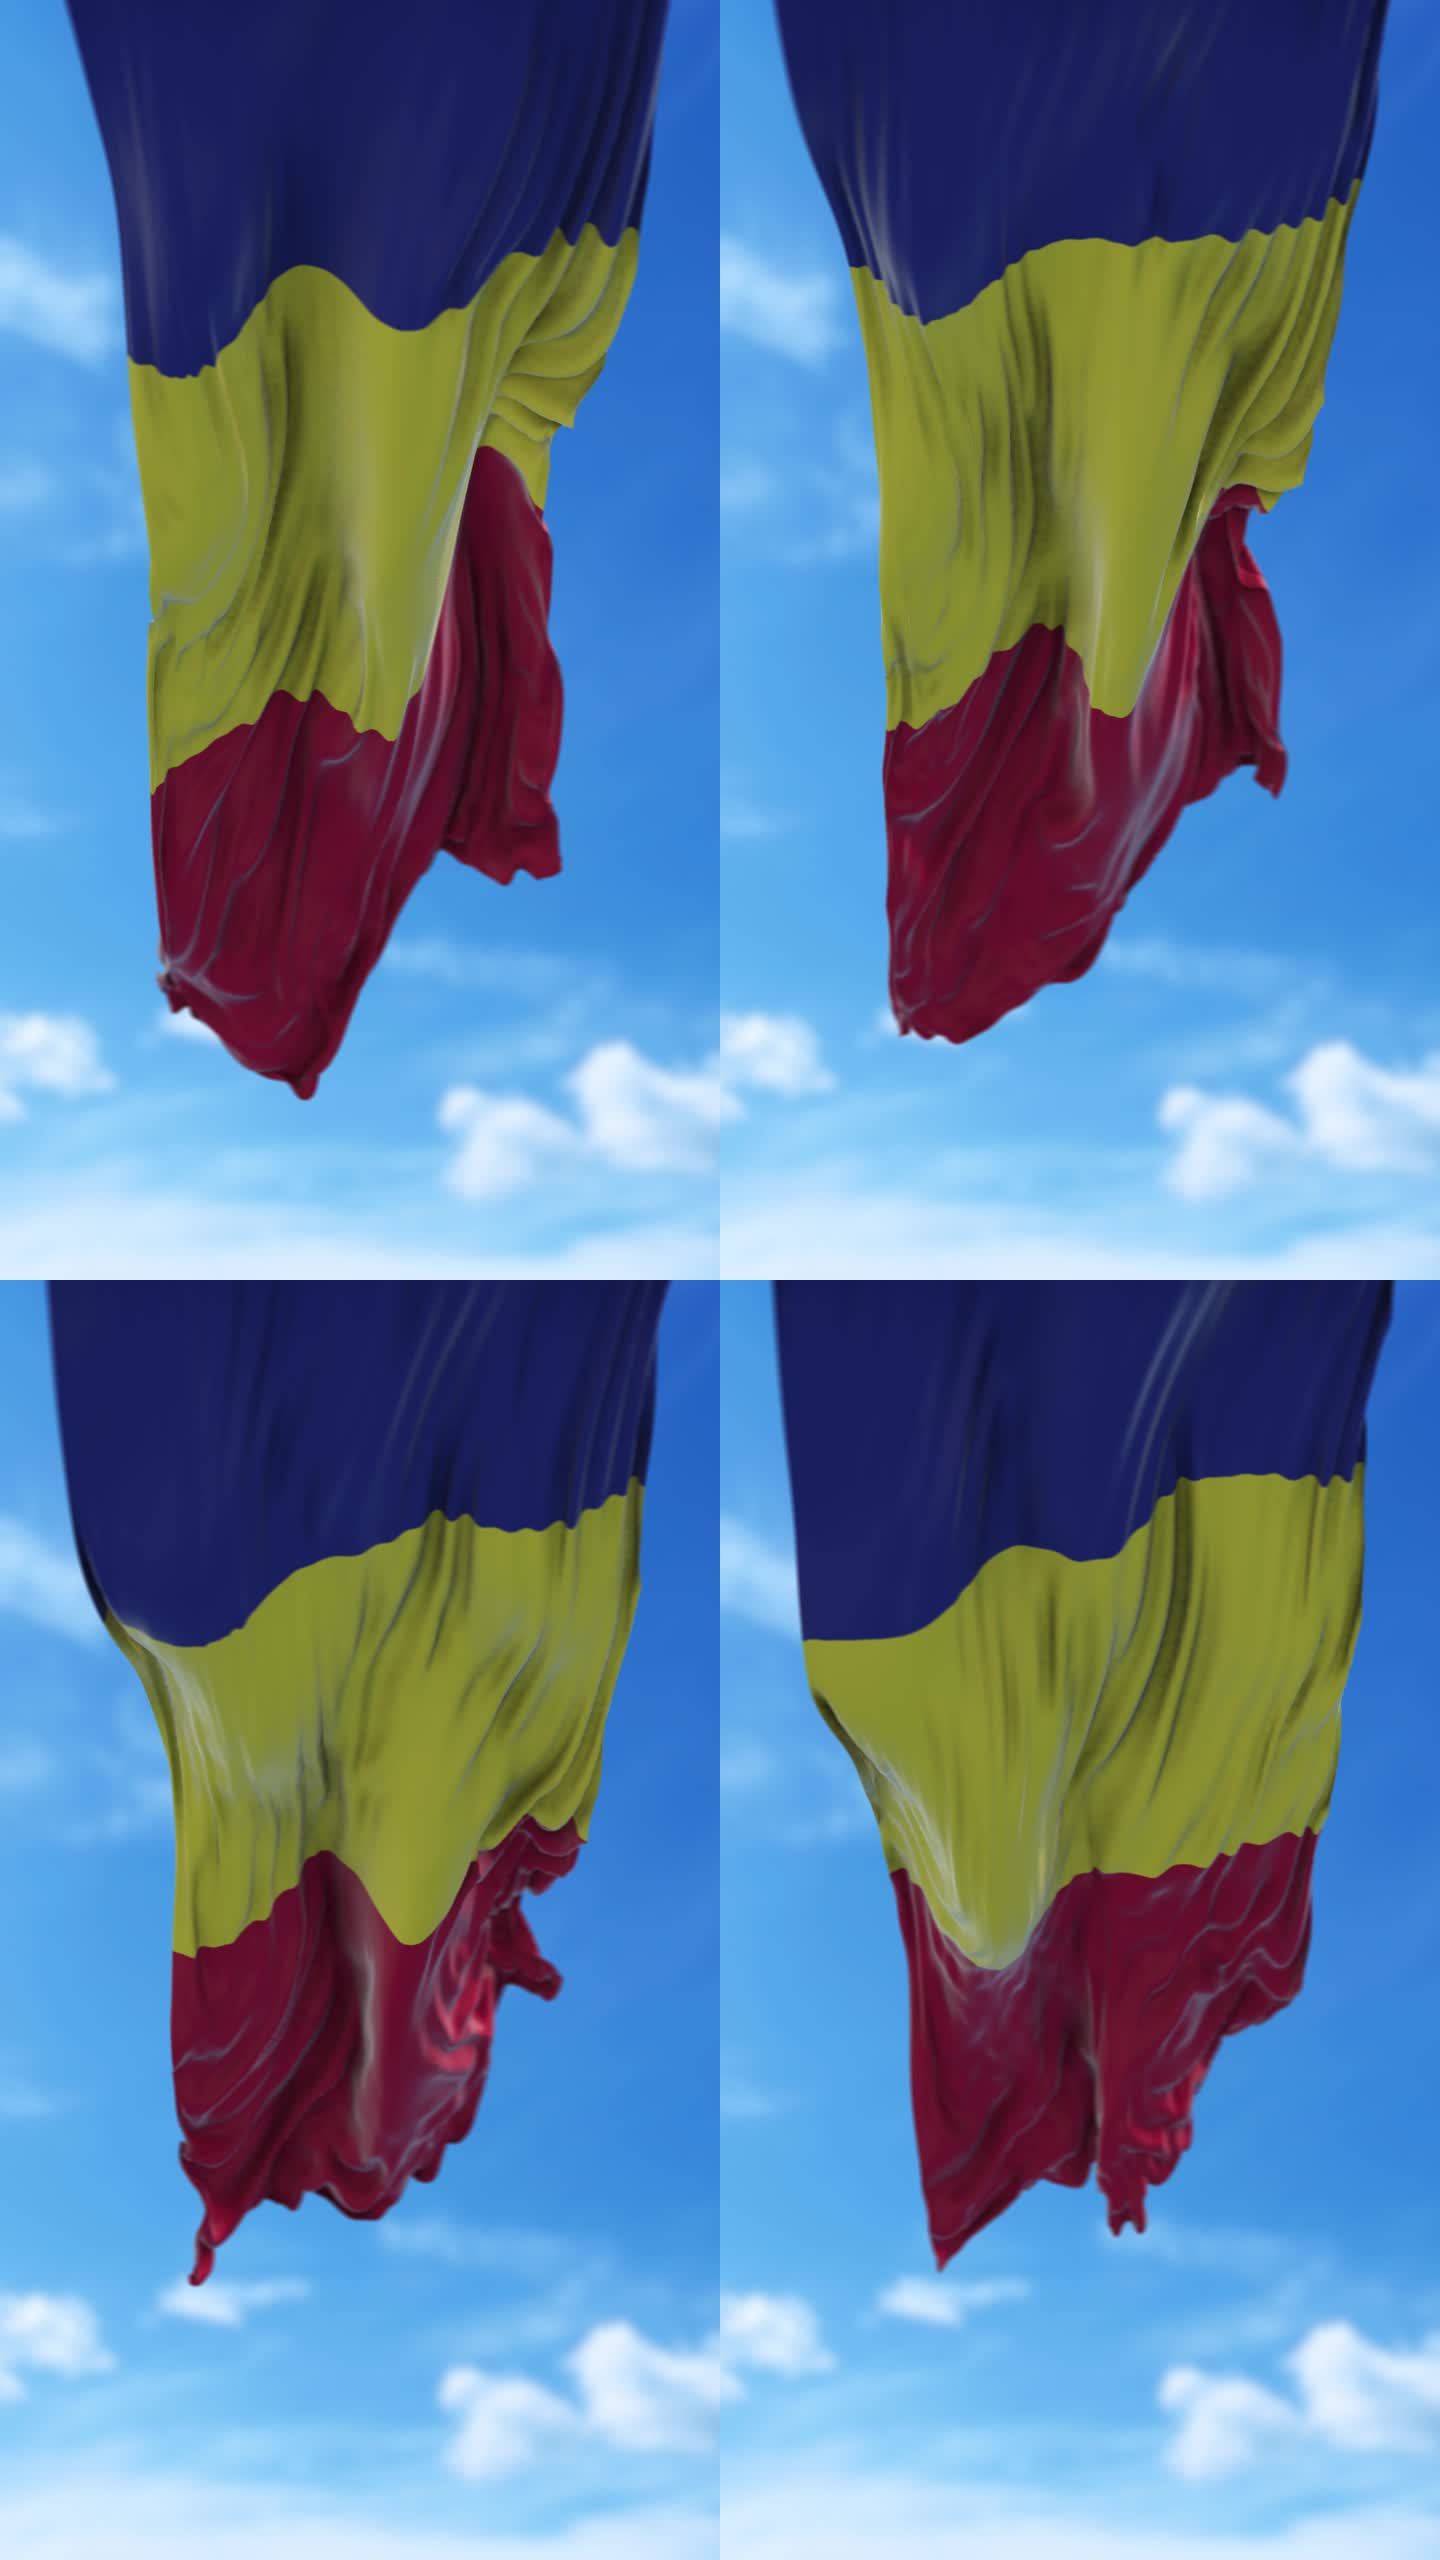 垂直罗马尼亚国旗在4K分辨率的蓝天下缓缓飘扬